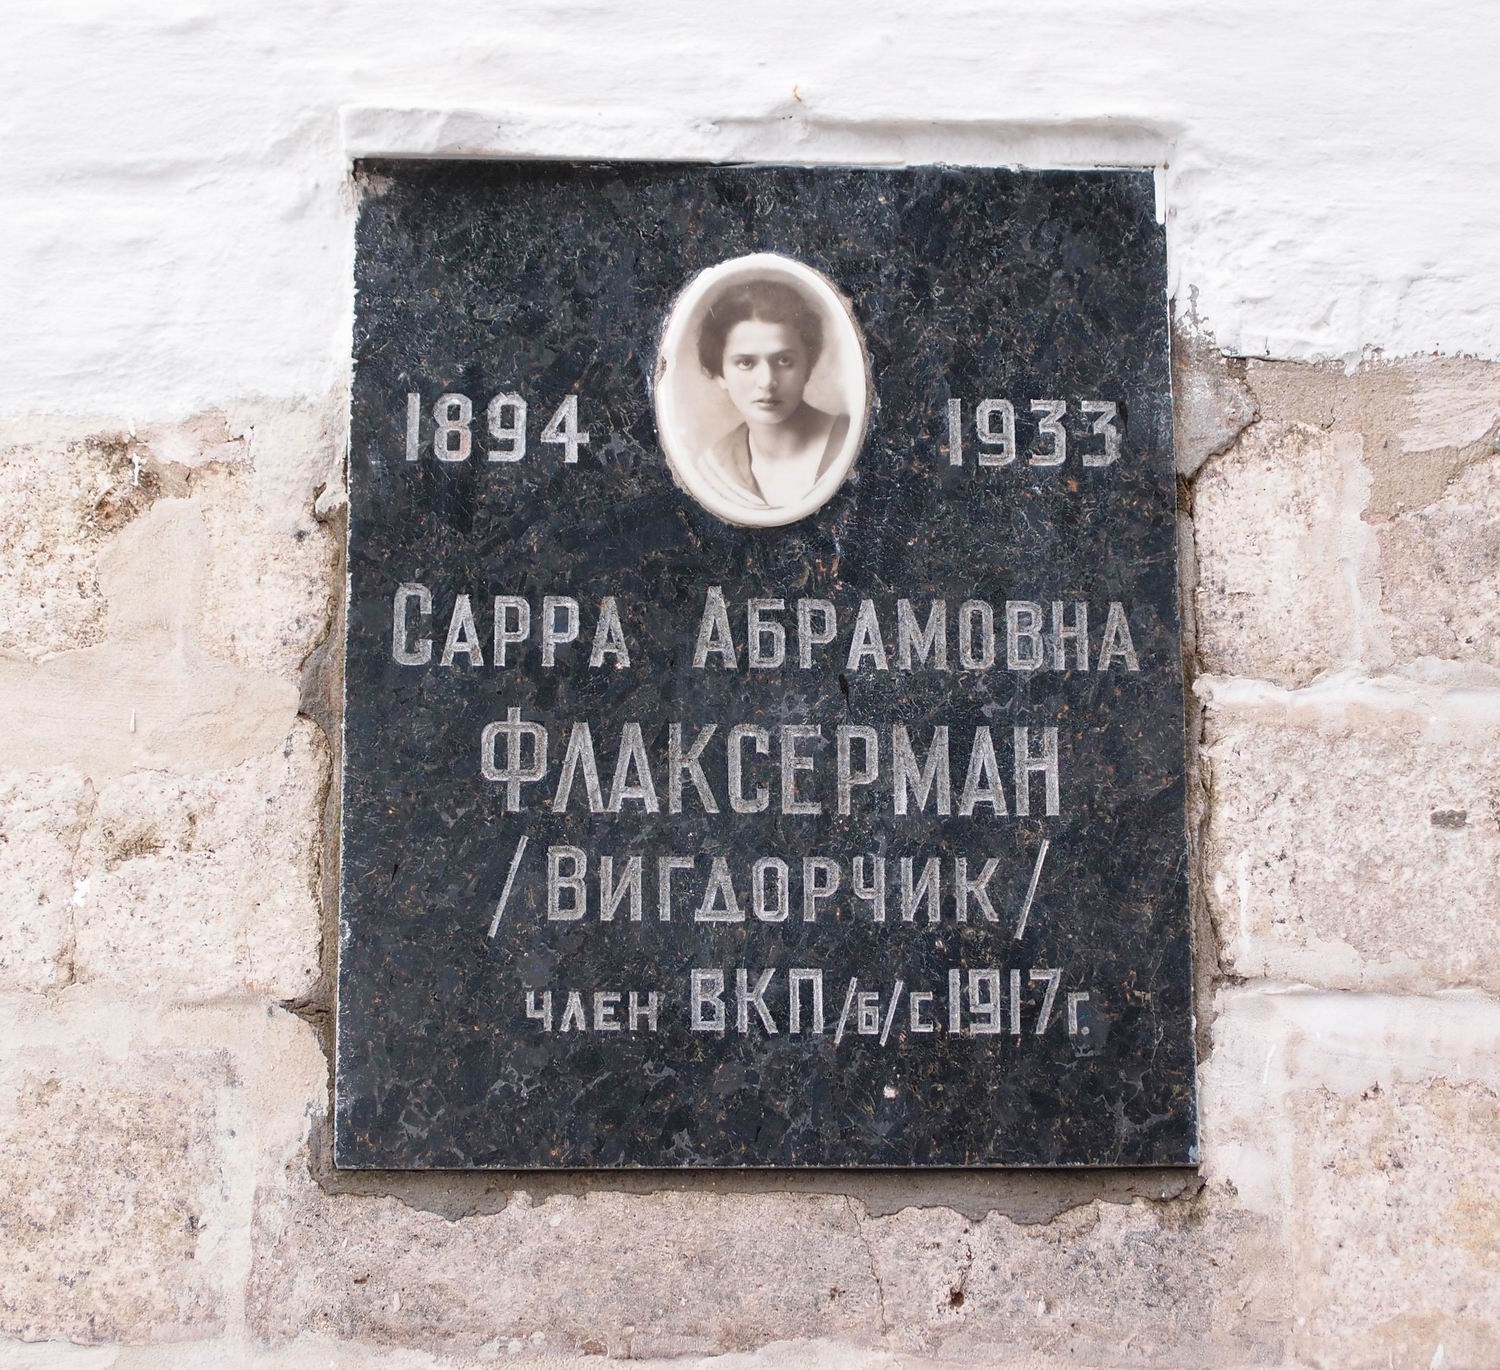 Плита на нише Флаксерман С.А. (1894–1933), на Новодевичьем кладбище (колумбарий [2]–27). Нажмите левую кнопку мыши, чтобы увидеть вариант до реставрации 2015.